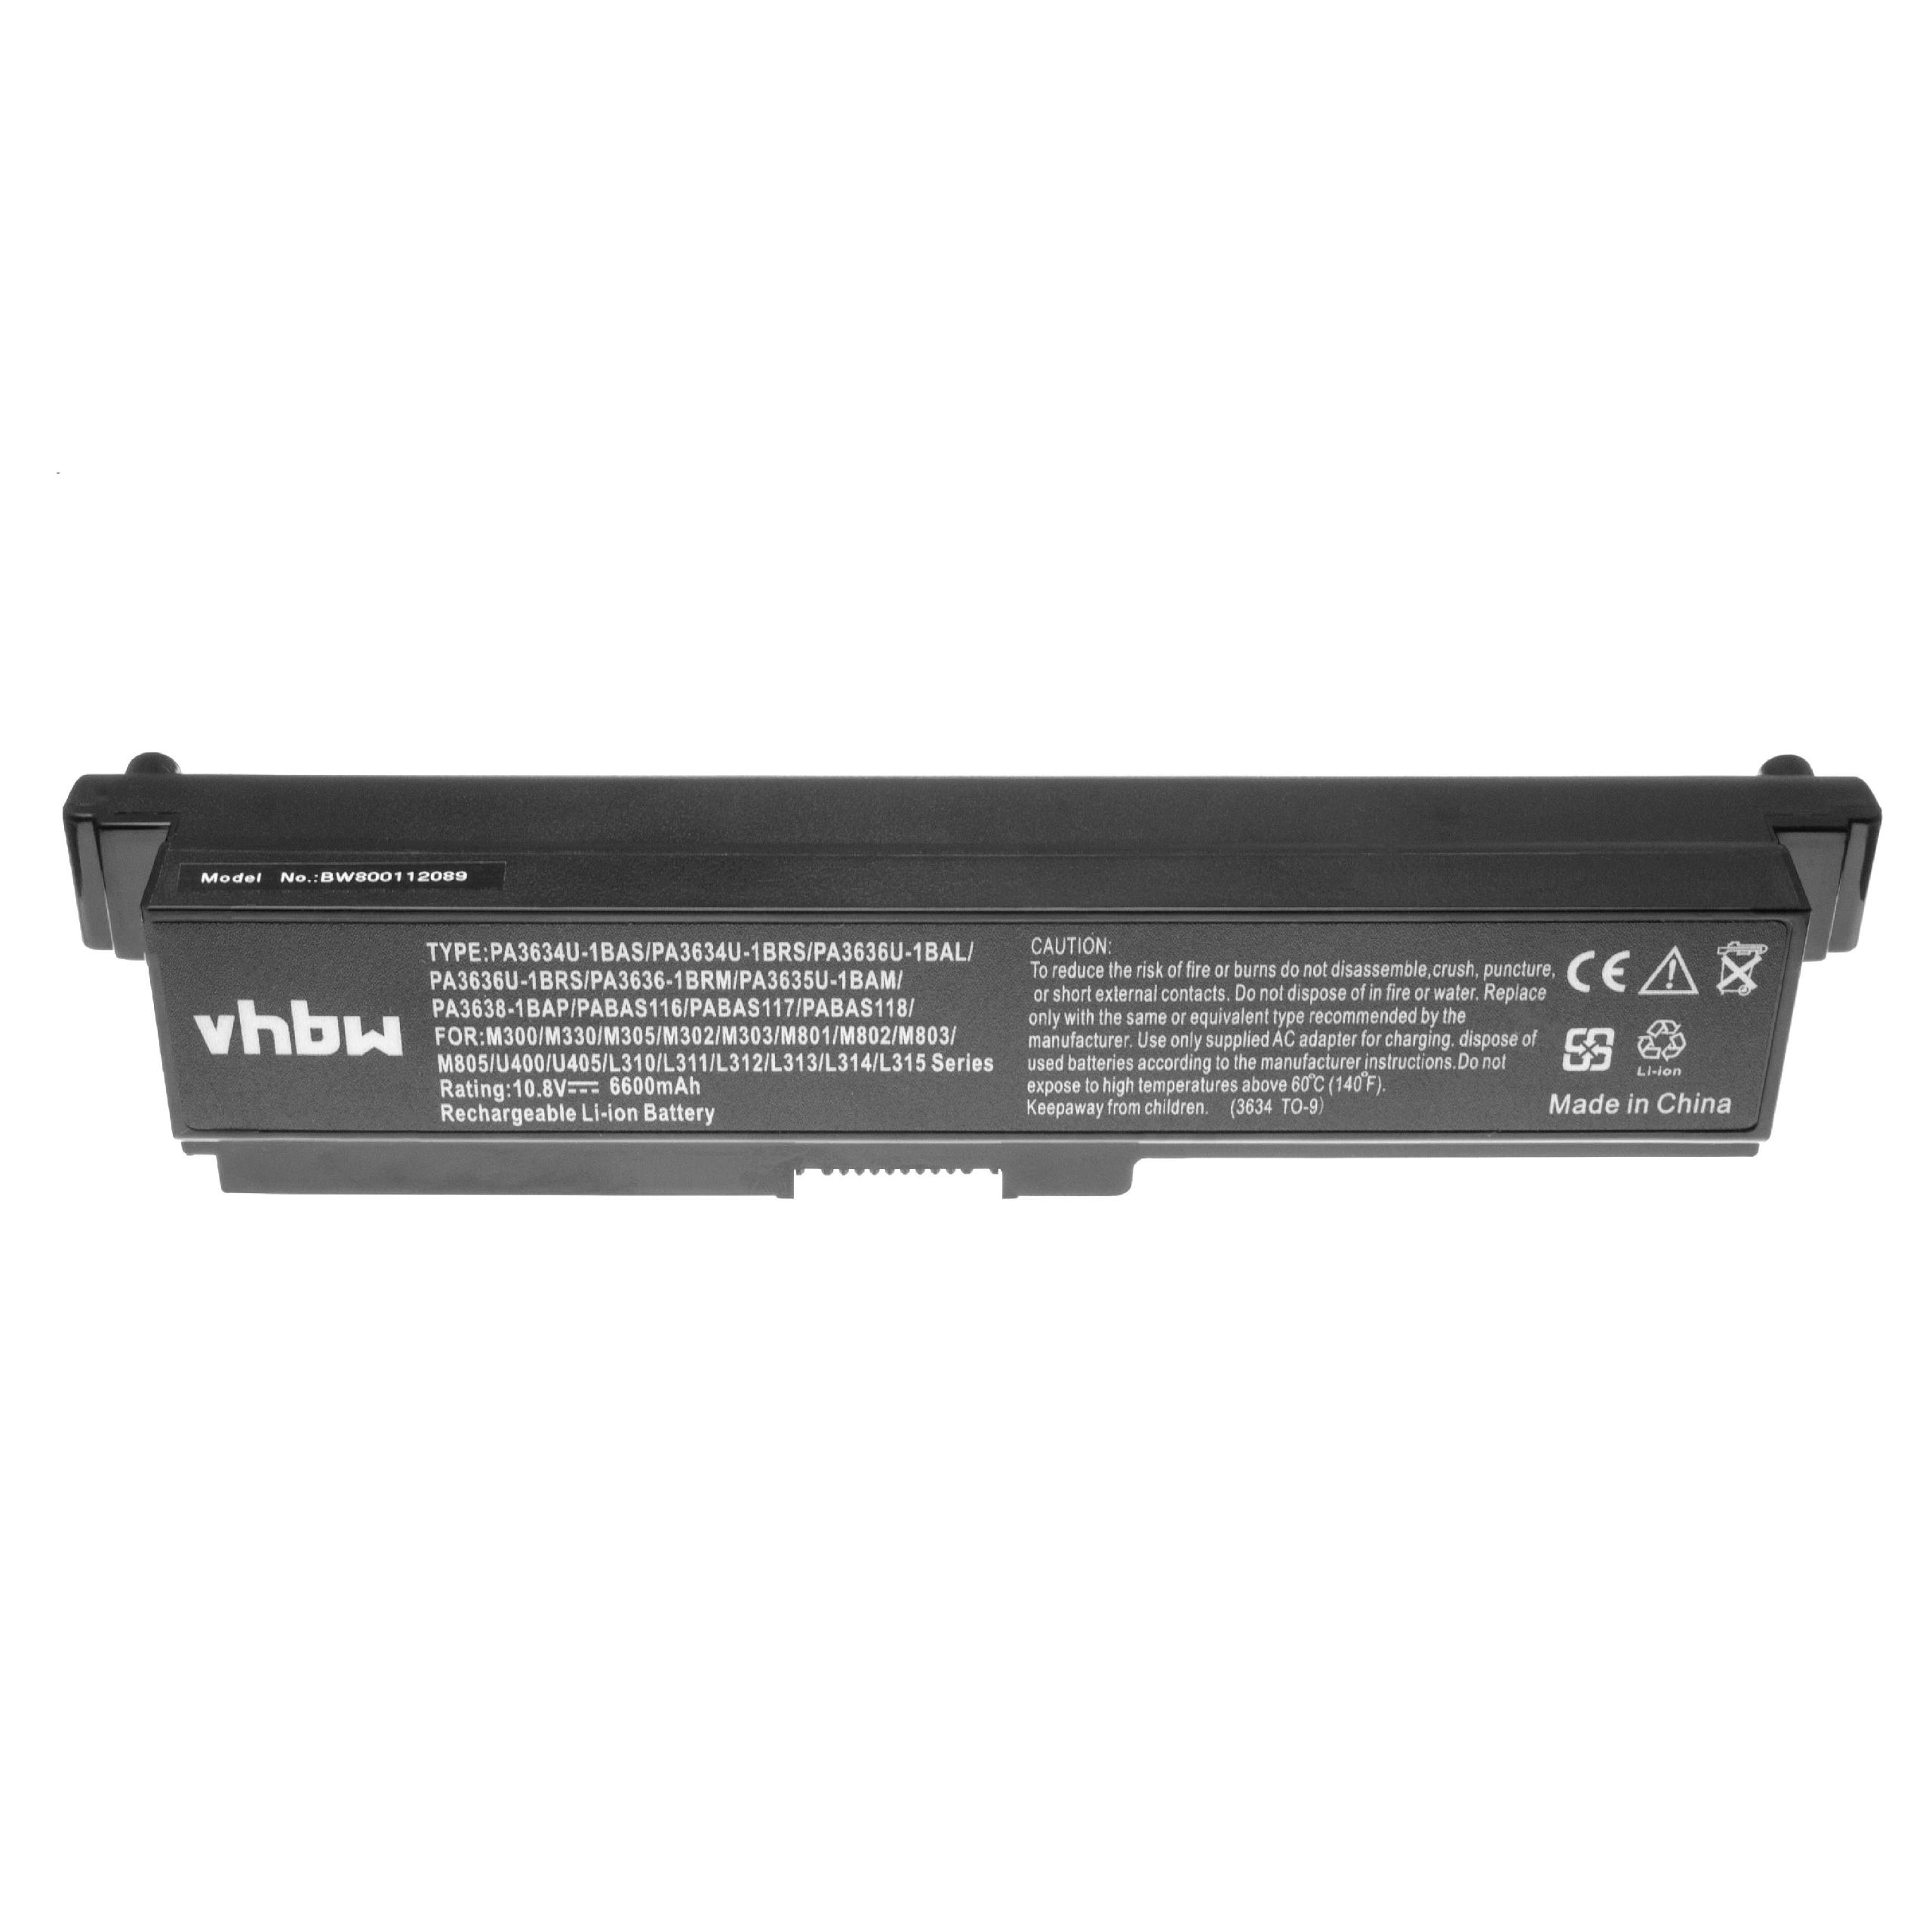 Batterie remplace Toshiba PA3635U-1BAM, PA3634U-1BAS pour ordinateur portable - 6600mAh 10,8V Li-ion, noir